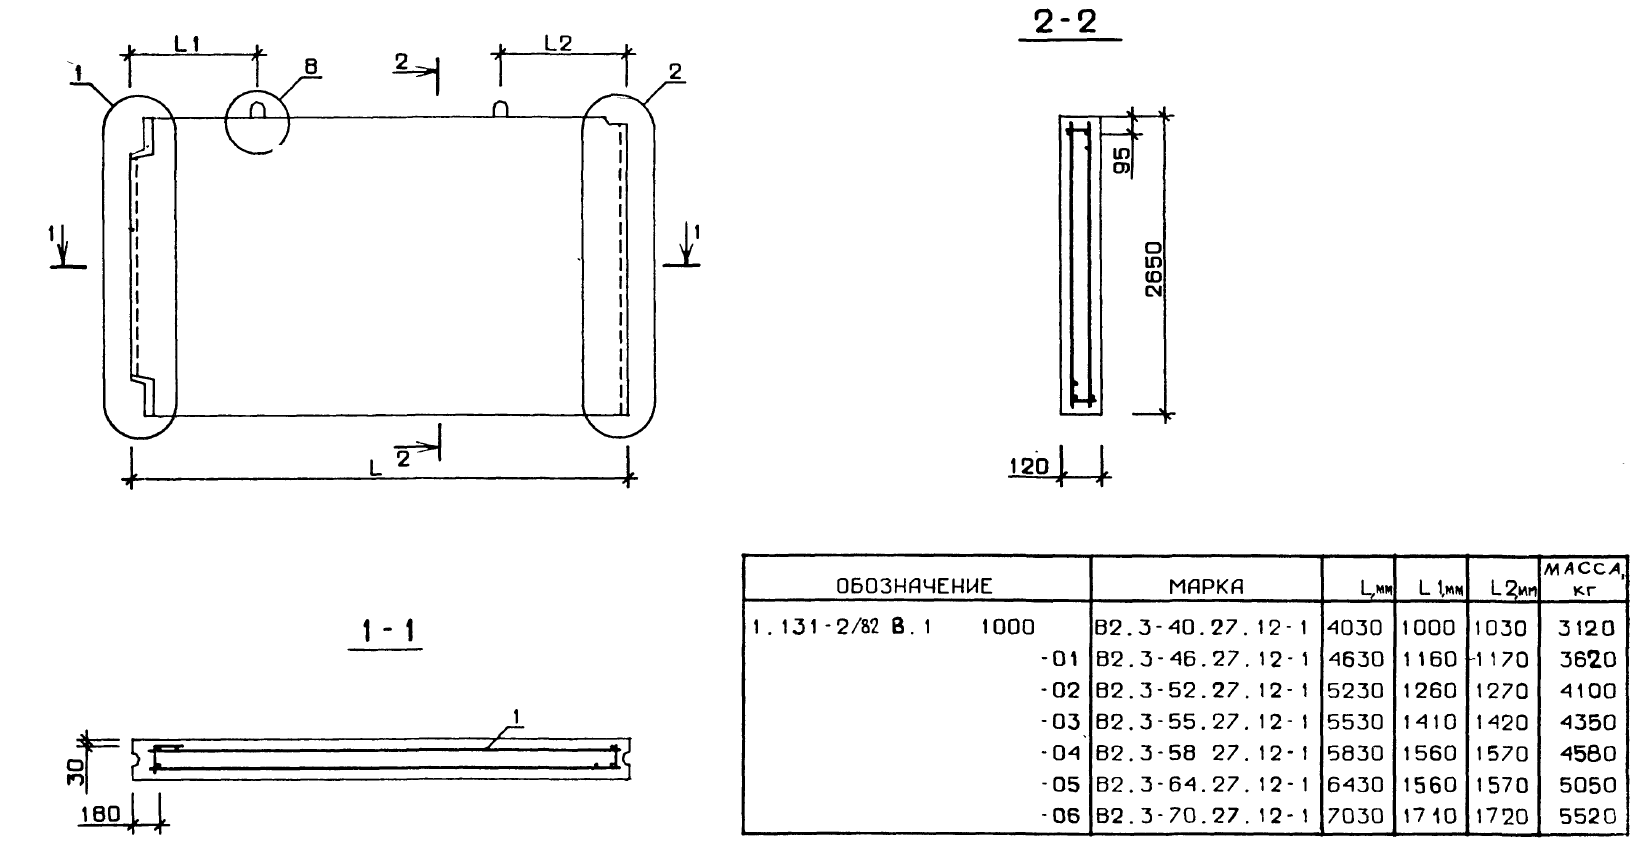 Внутренняя поперечная стеновая панель В2.3-58.27.12-1 серия 1.131-2/82